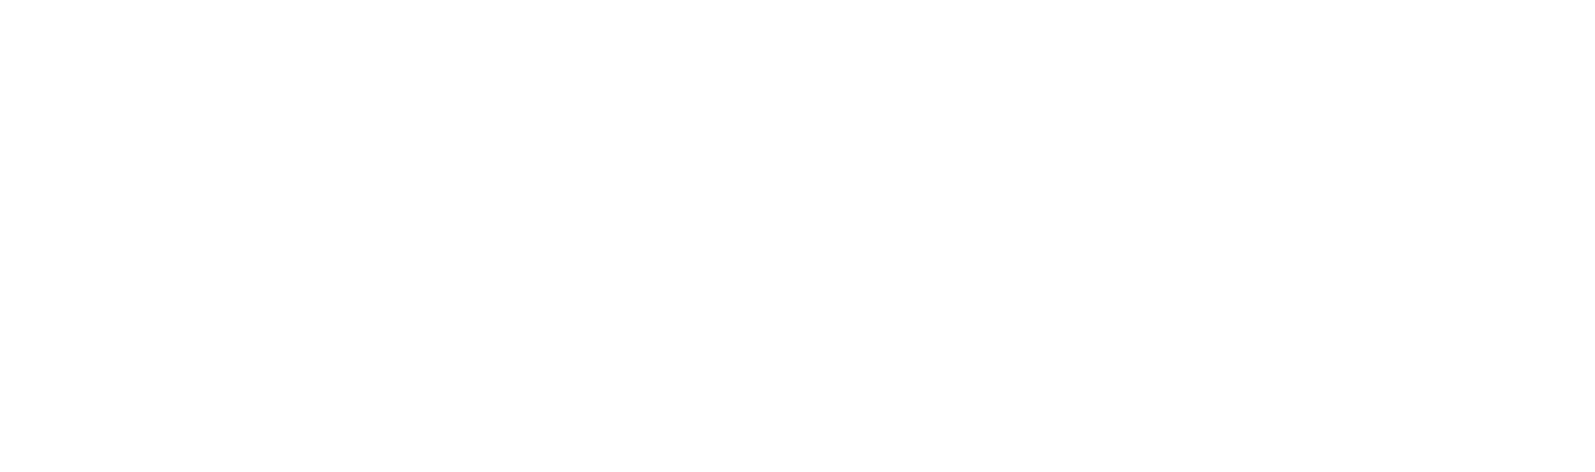 W. R. Berkley Logo groß für dunkle Hintergründe (transparentes PNG)